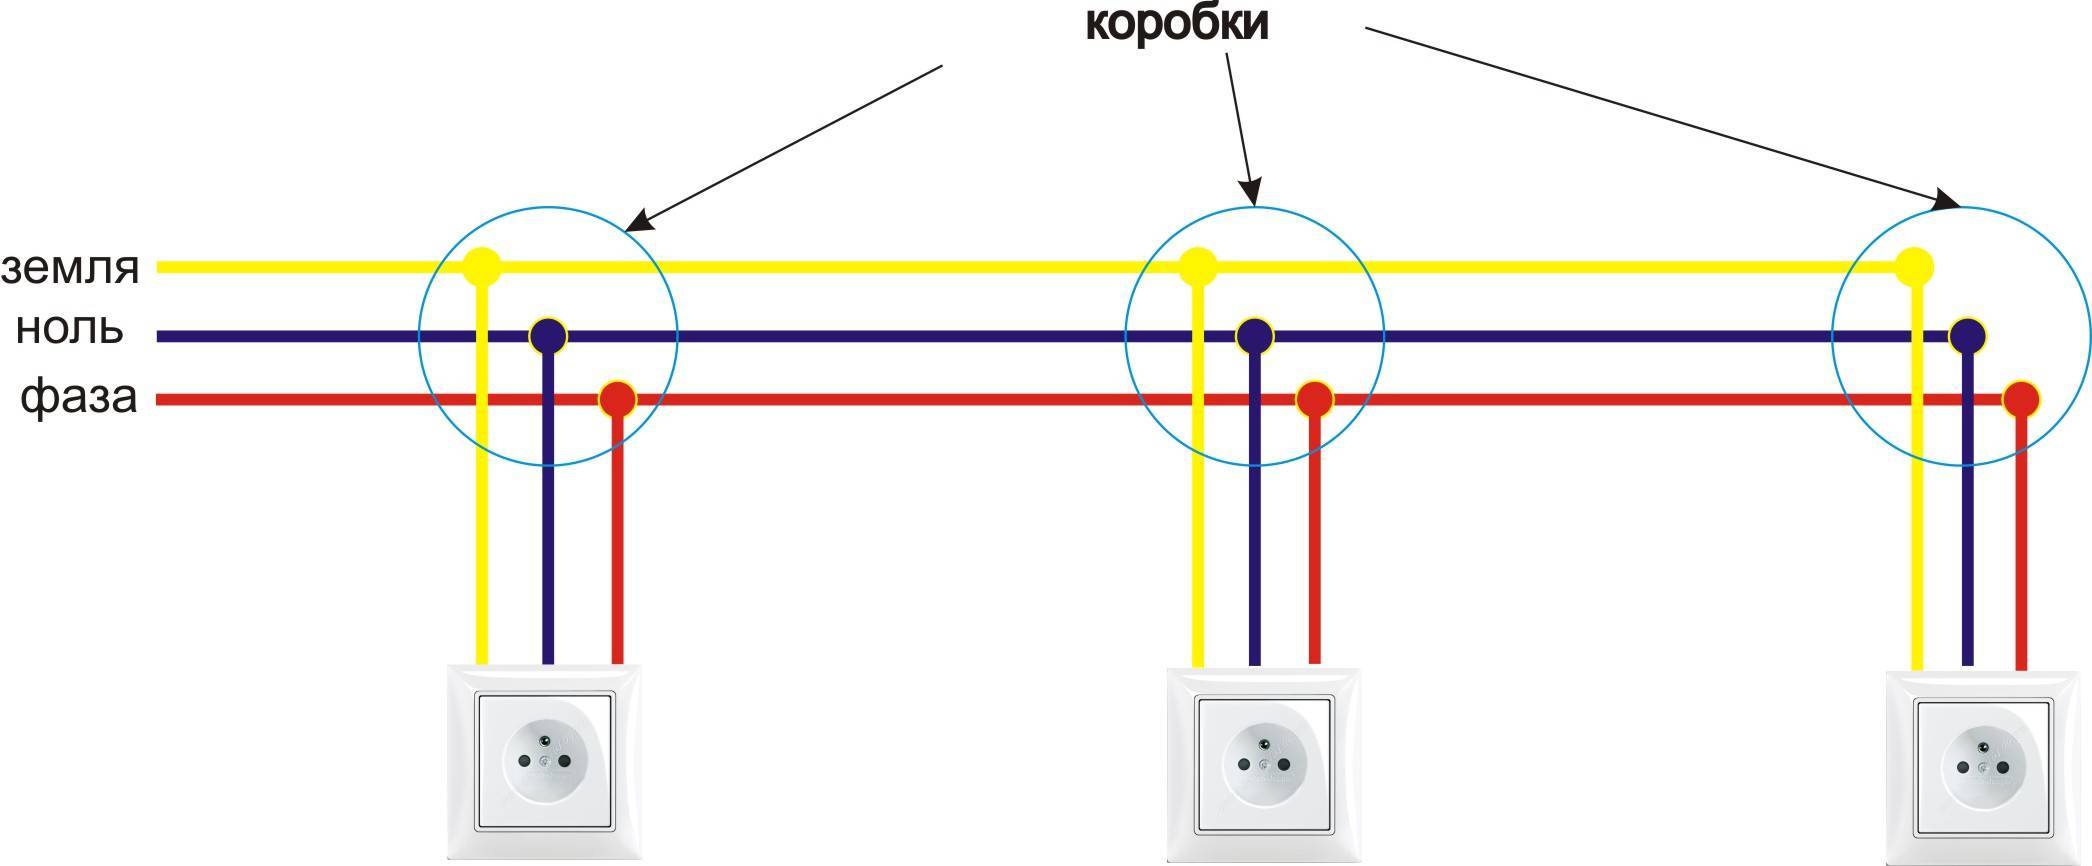 Фаза в розетке – слева или справа, как это определить мультиметром или тестером? с какой стороны должна быть, и как это проверить